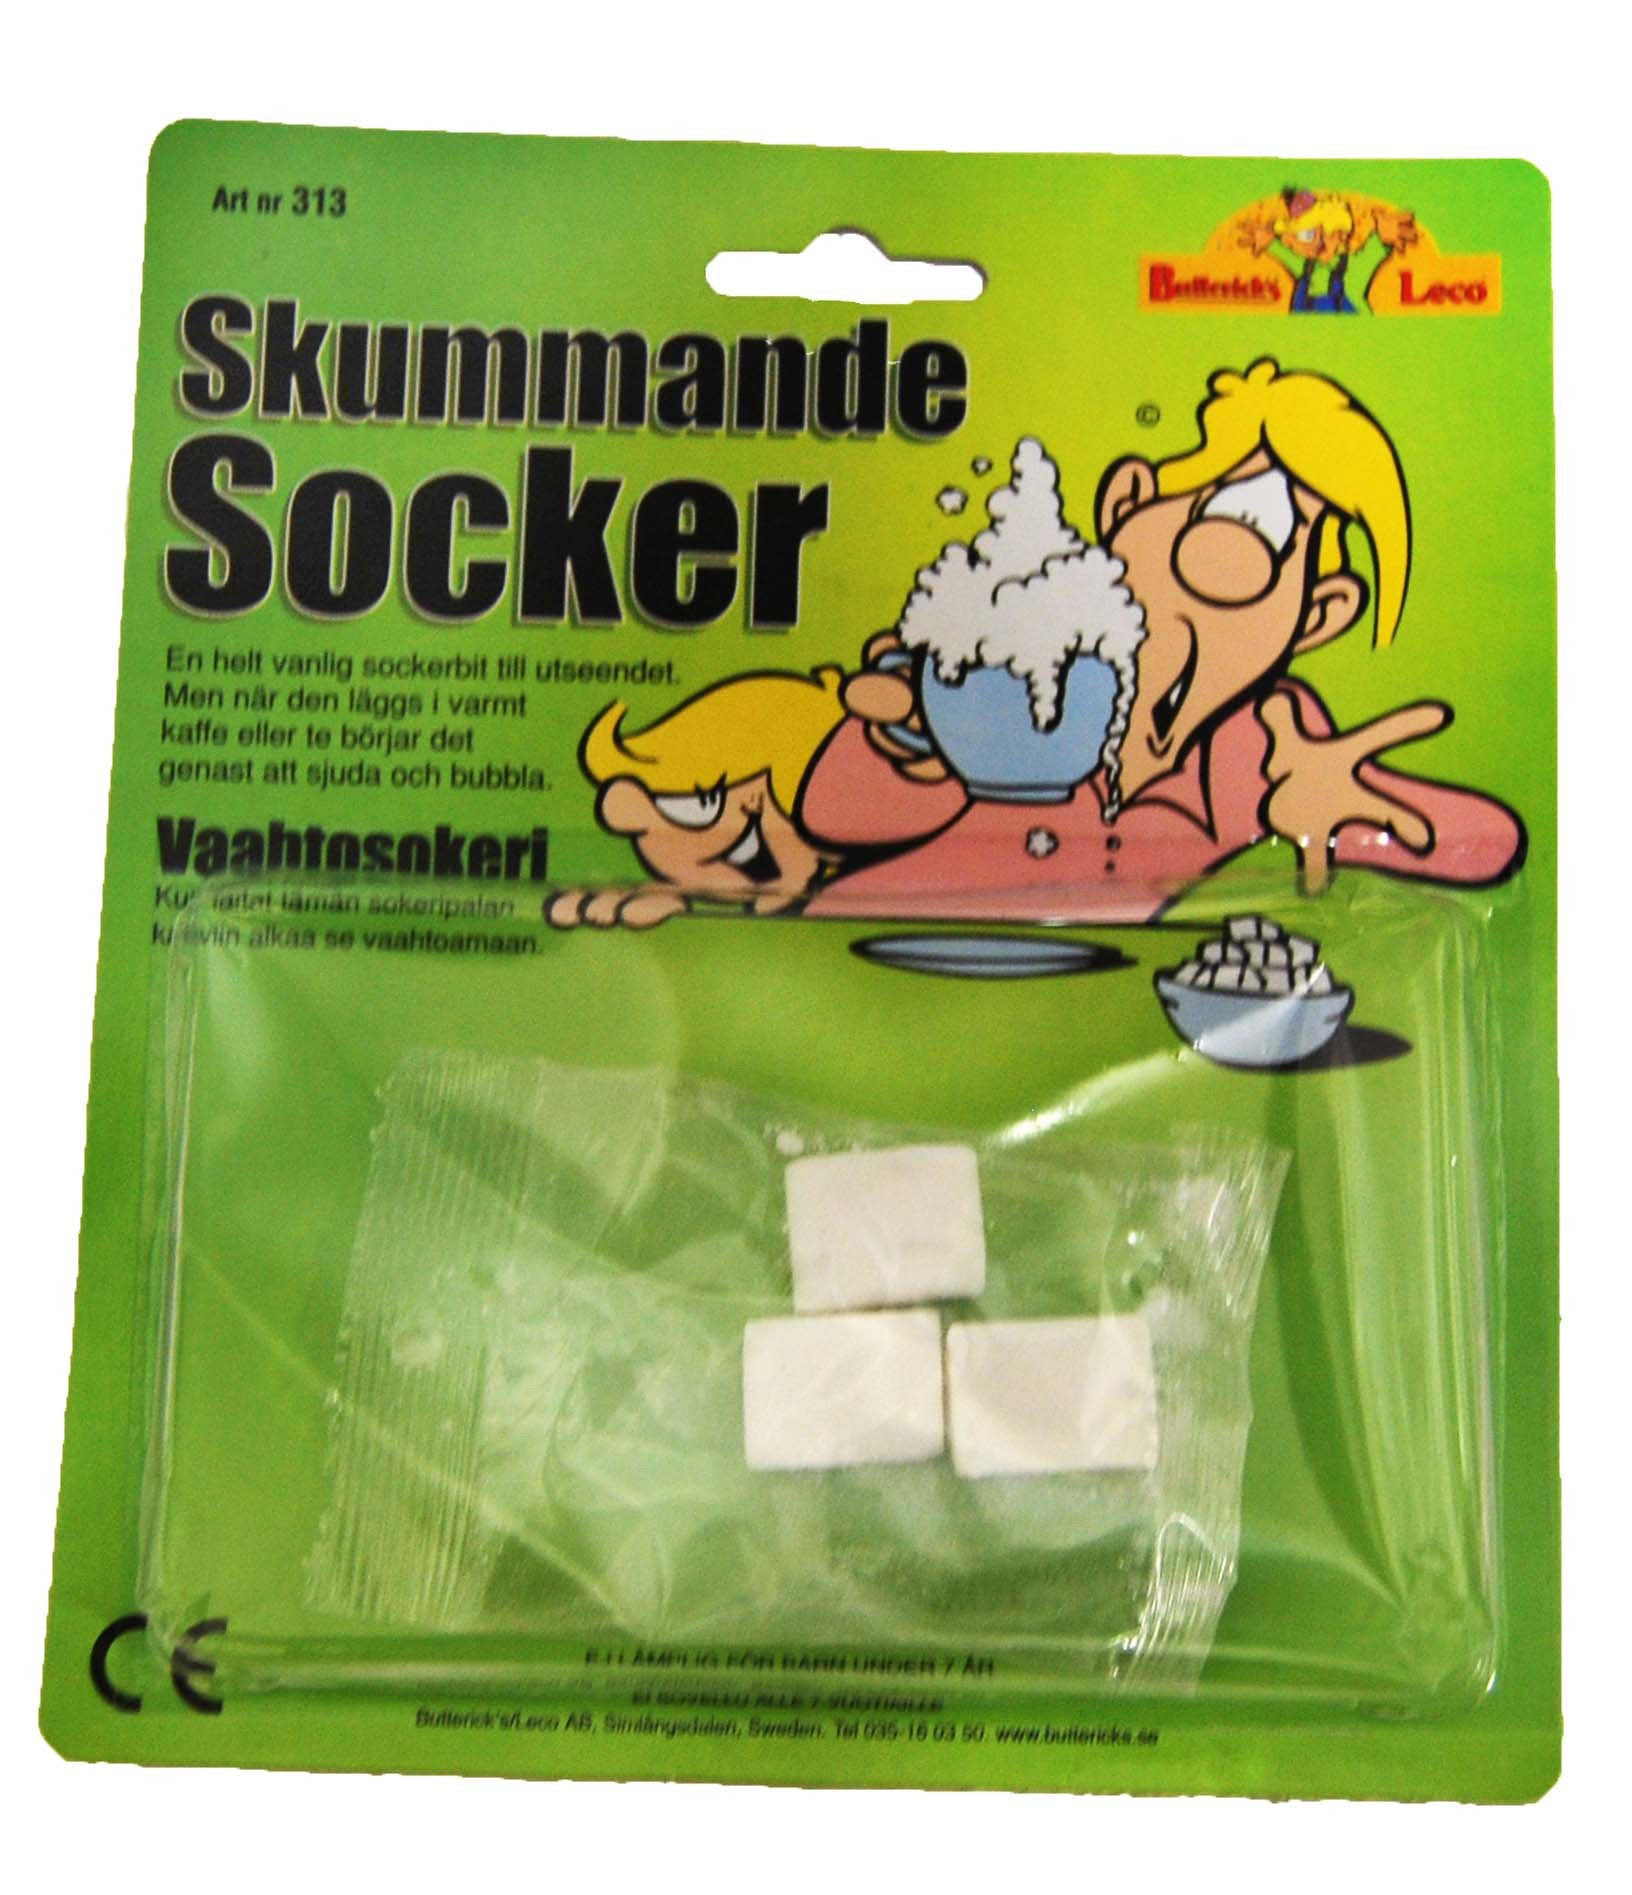 Skummande socker - Skämtpryl thumbnail